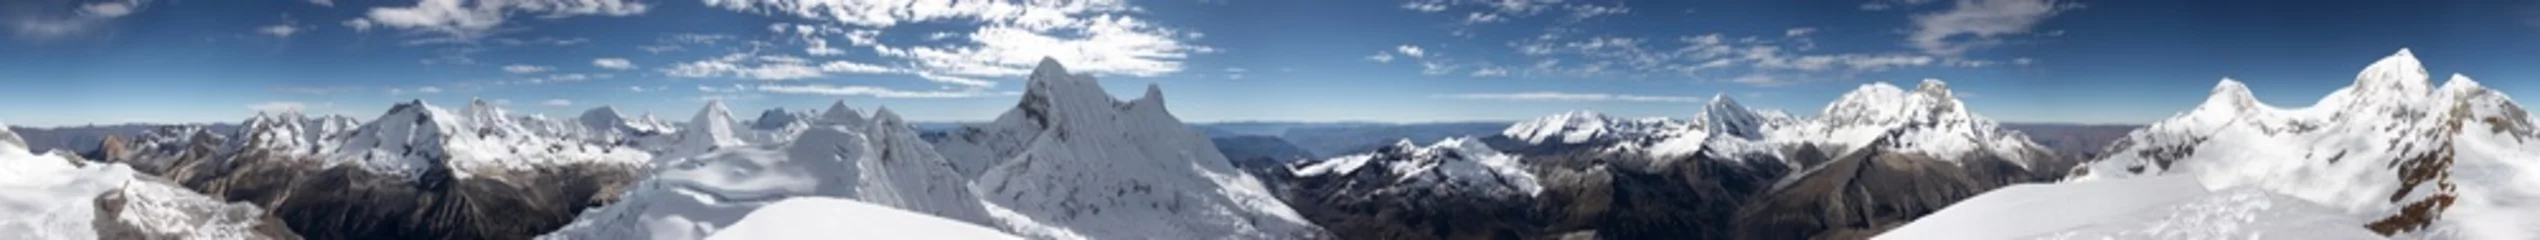 Papier Peint photo Lavable Panoramique Panorama du sommet à 360 degrés